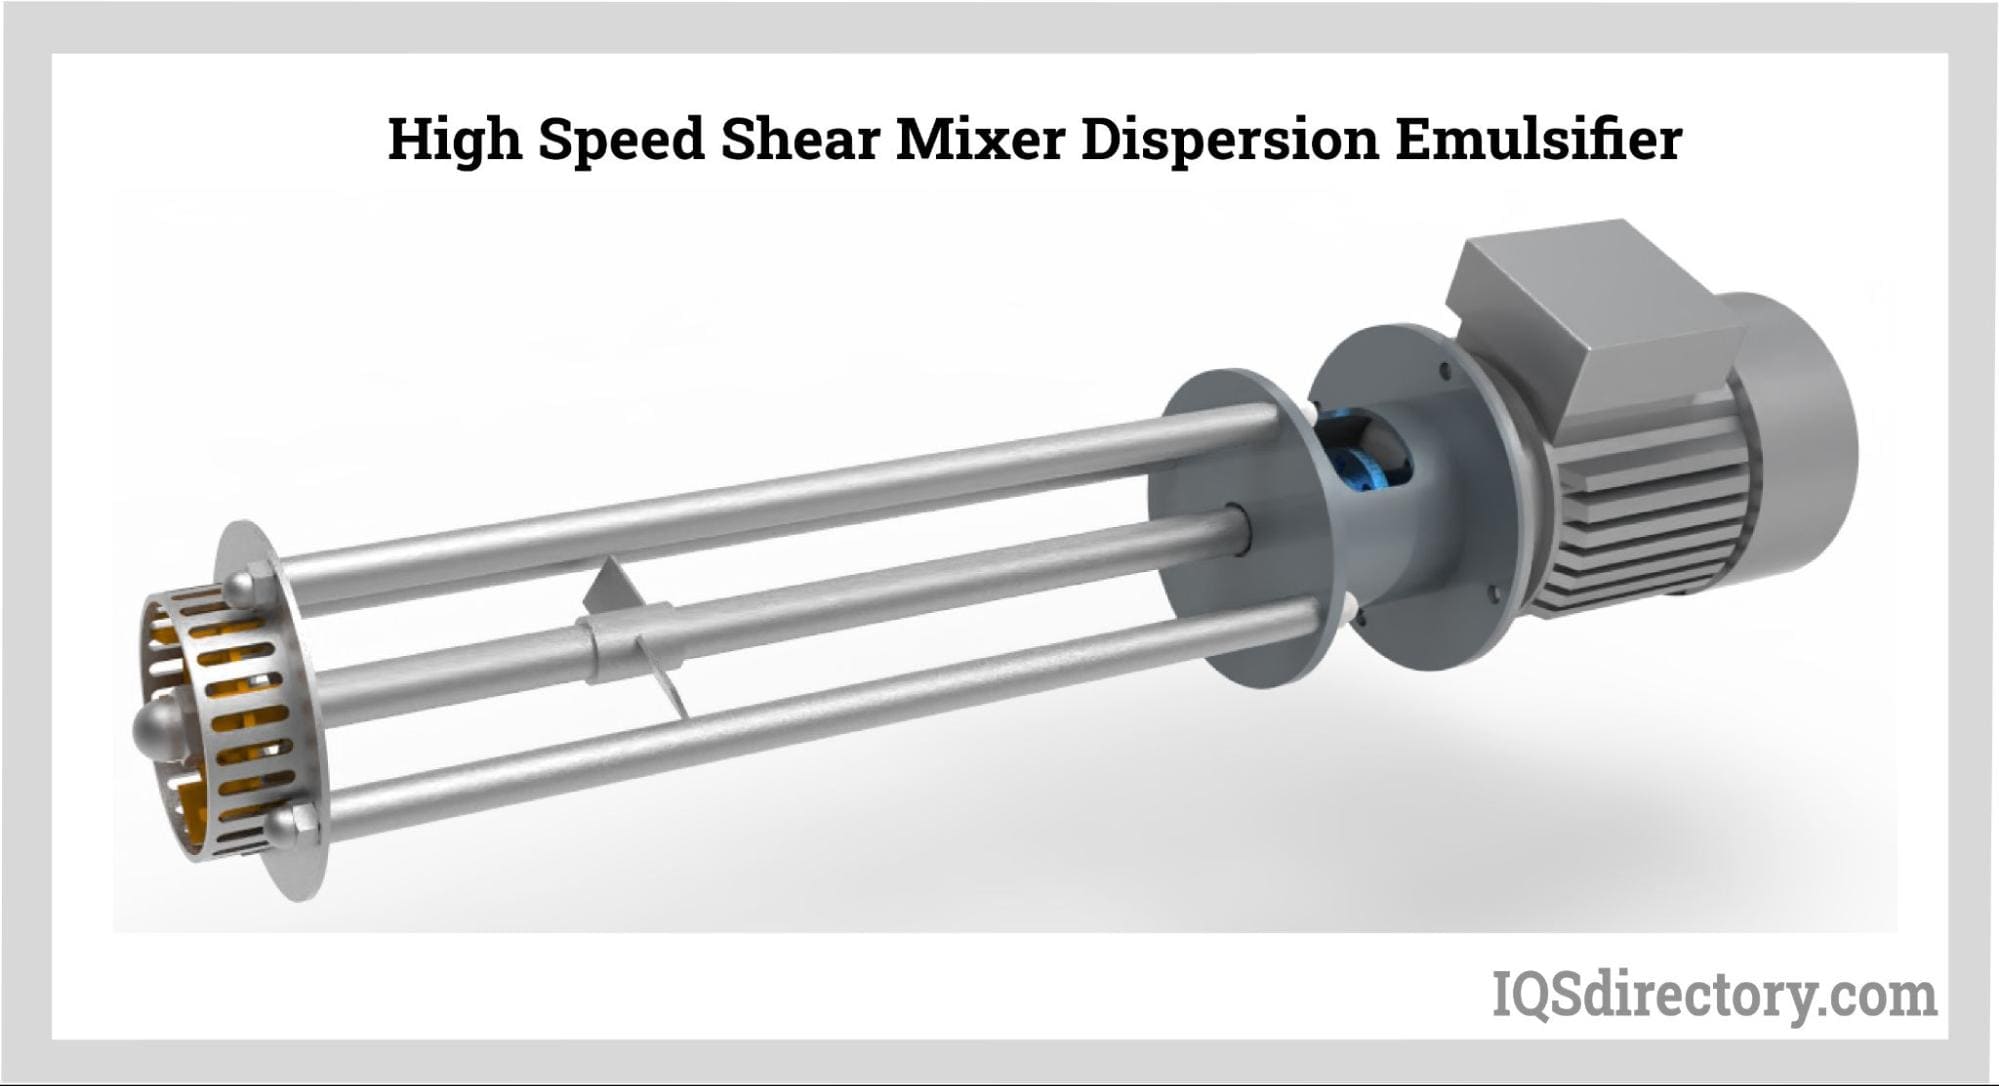 High Speed Shear Mixer Dispersion Emulsifier